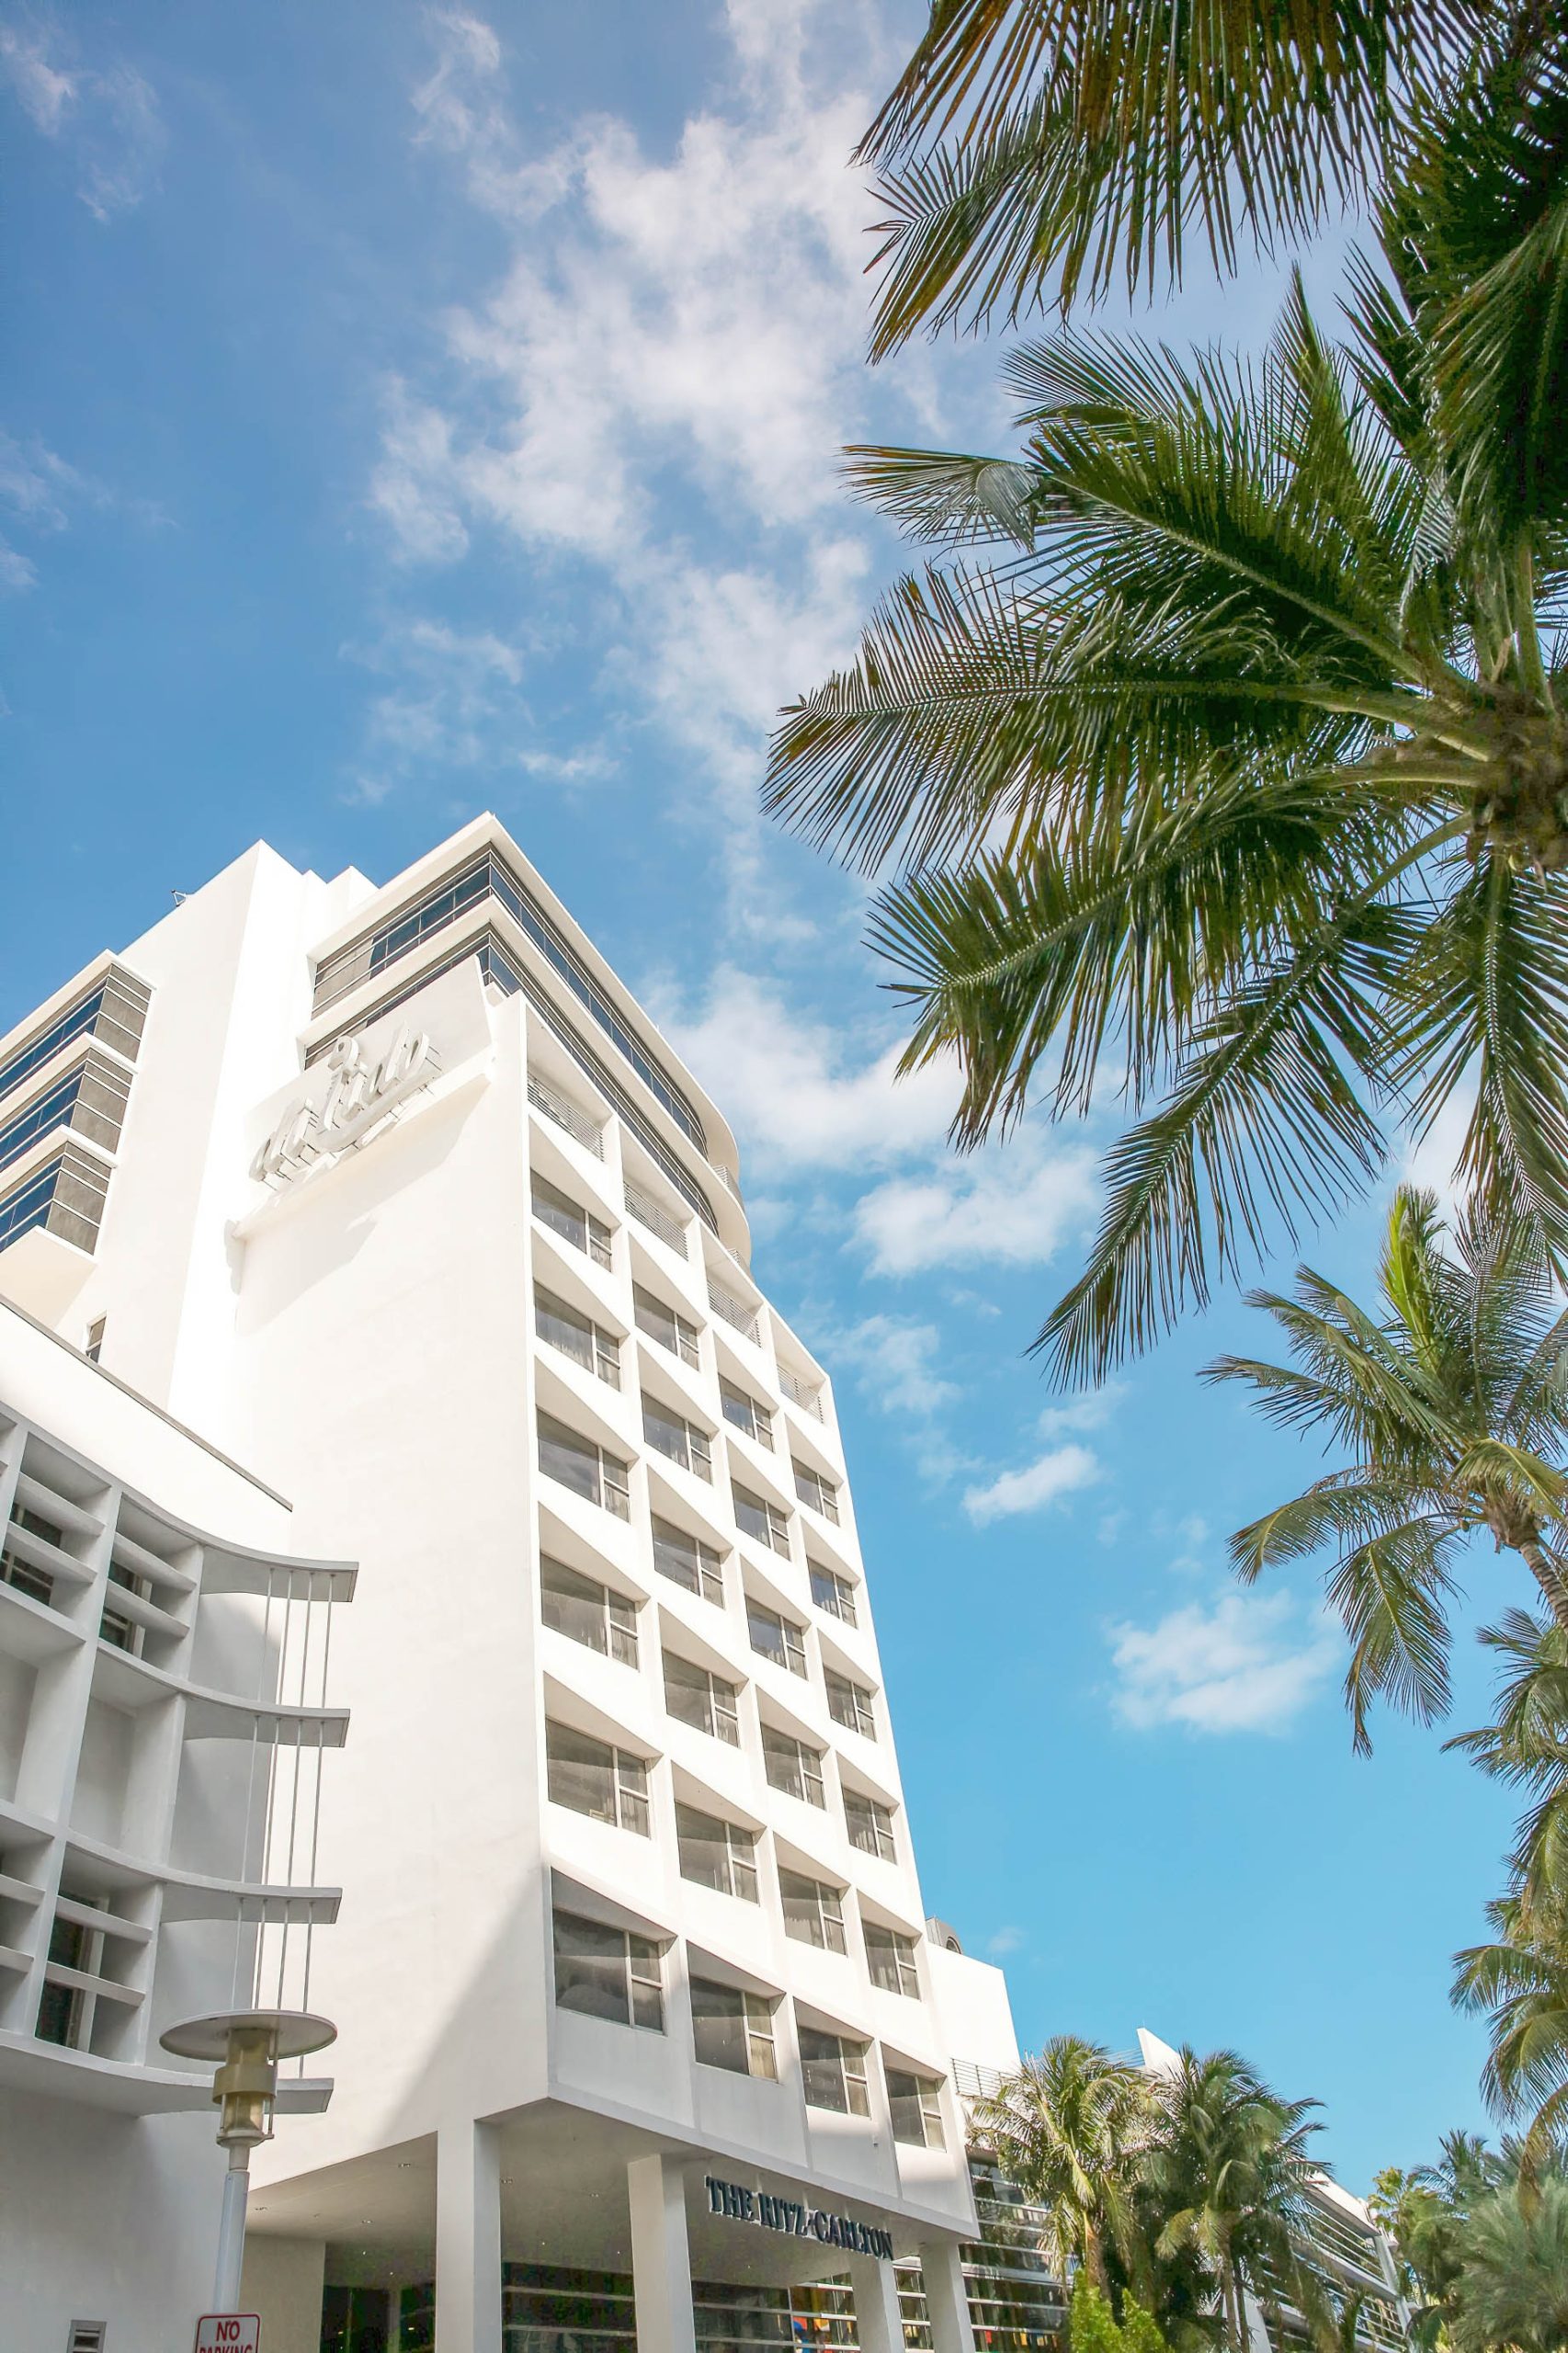 The Ritz-Carlton, South Beach Hotel – Miami Beach, FL, USA – Exterior Tower View